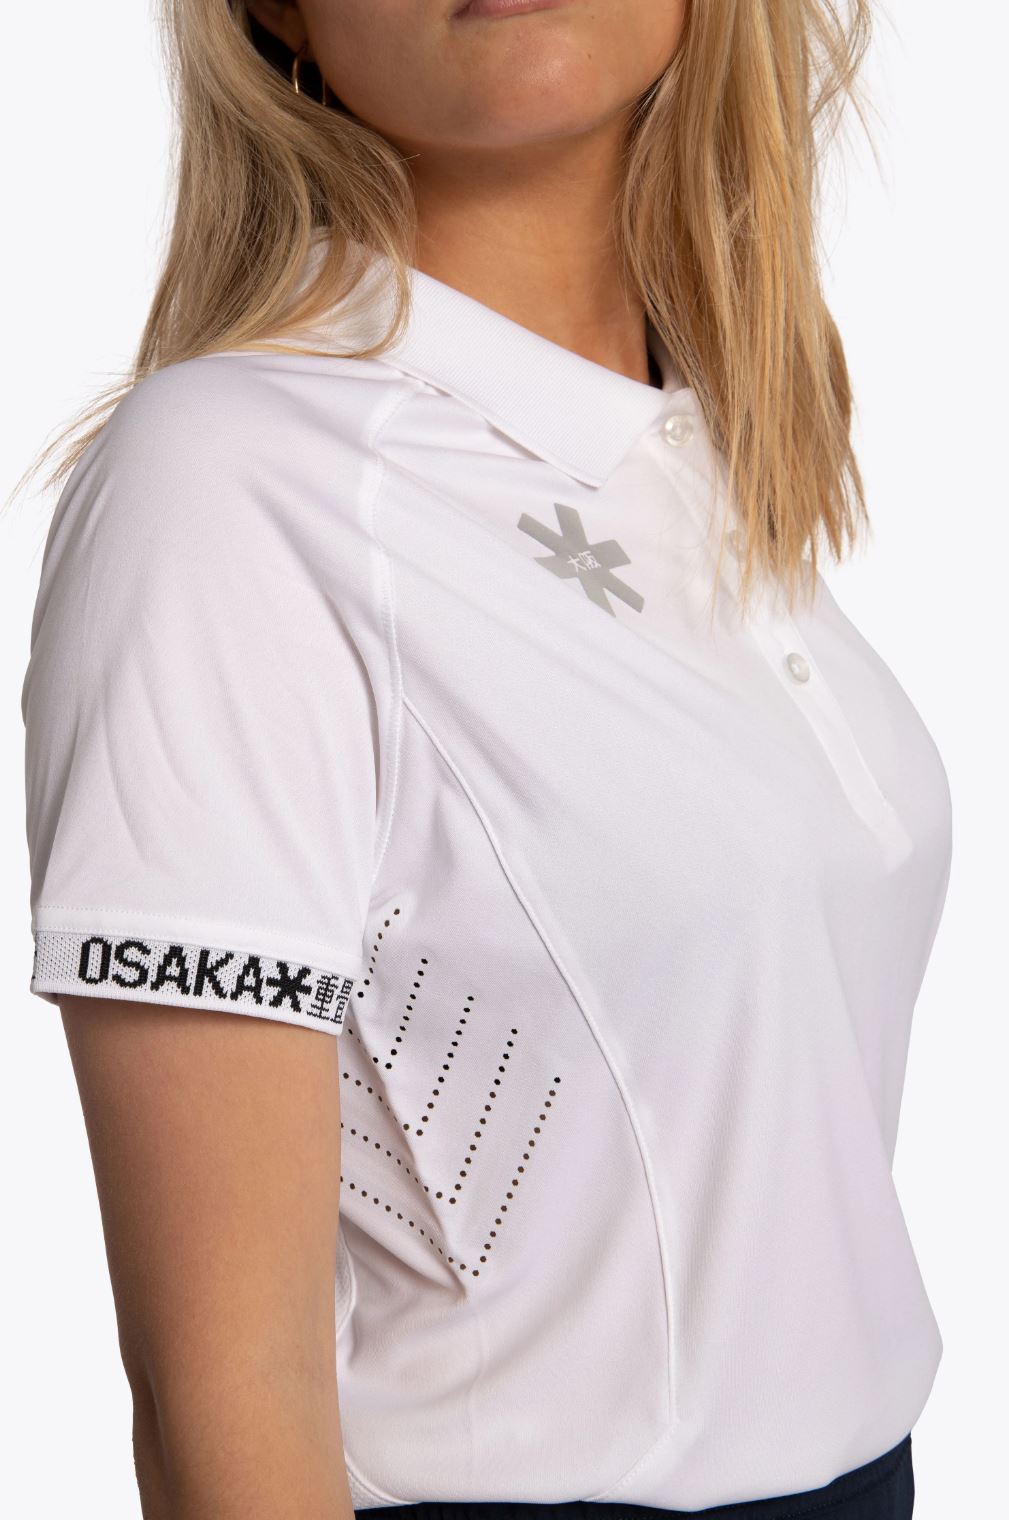 Osaka Women's Polo Jersey (Hvid)